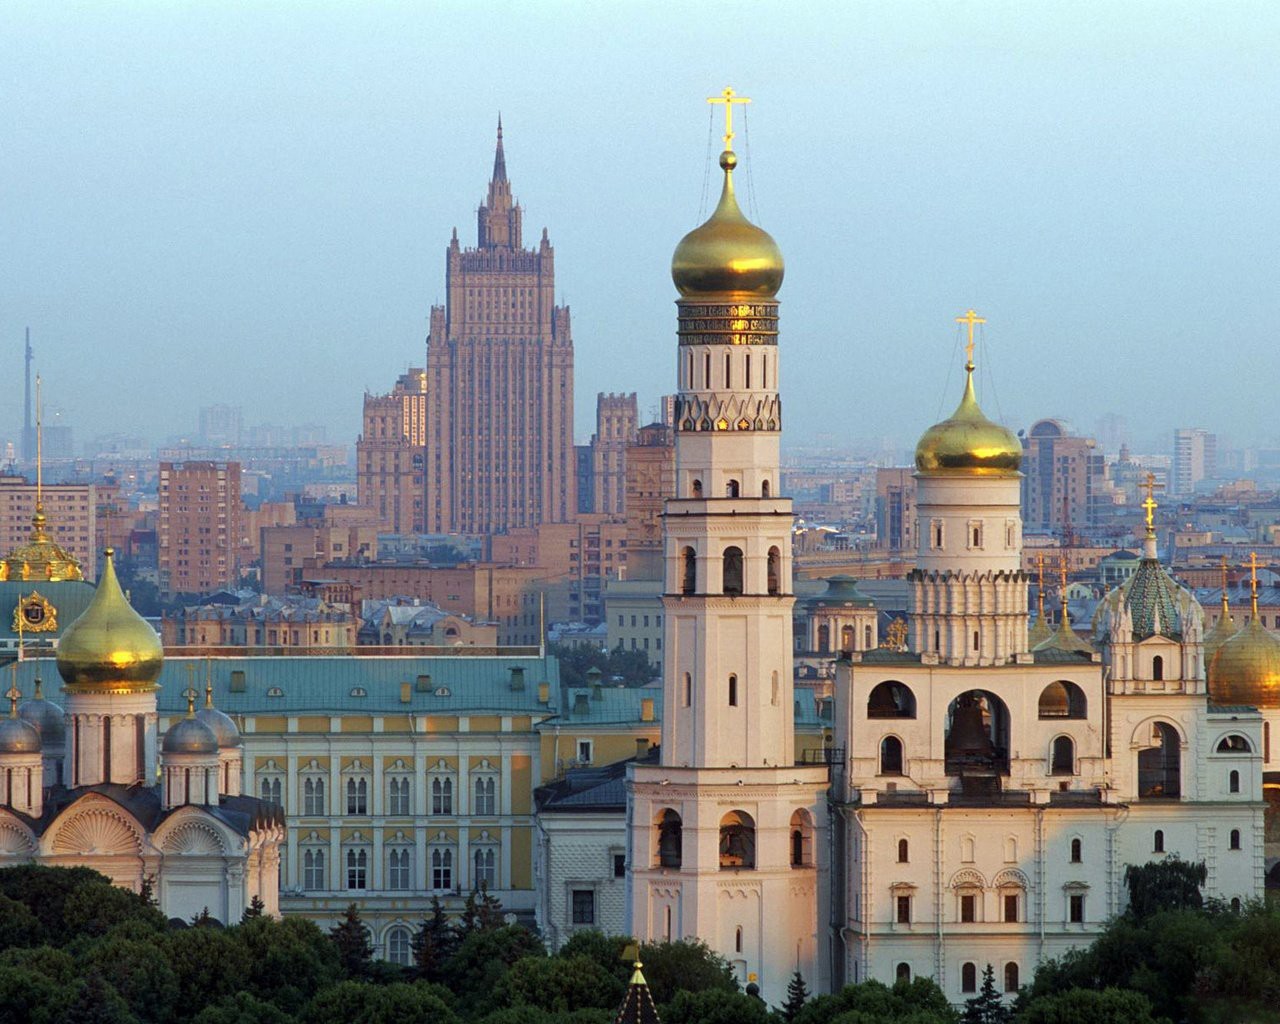 Вид на Москву с колокольни Ивана Великого